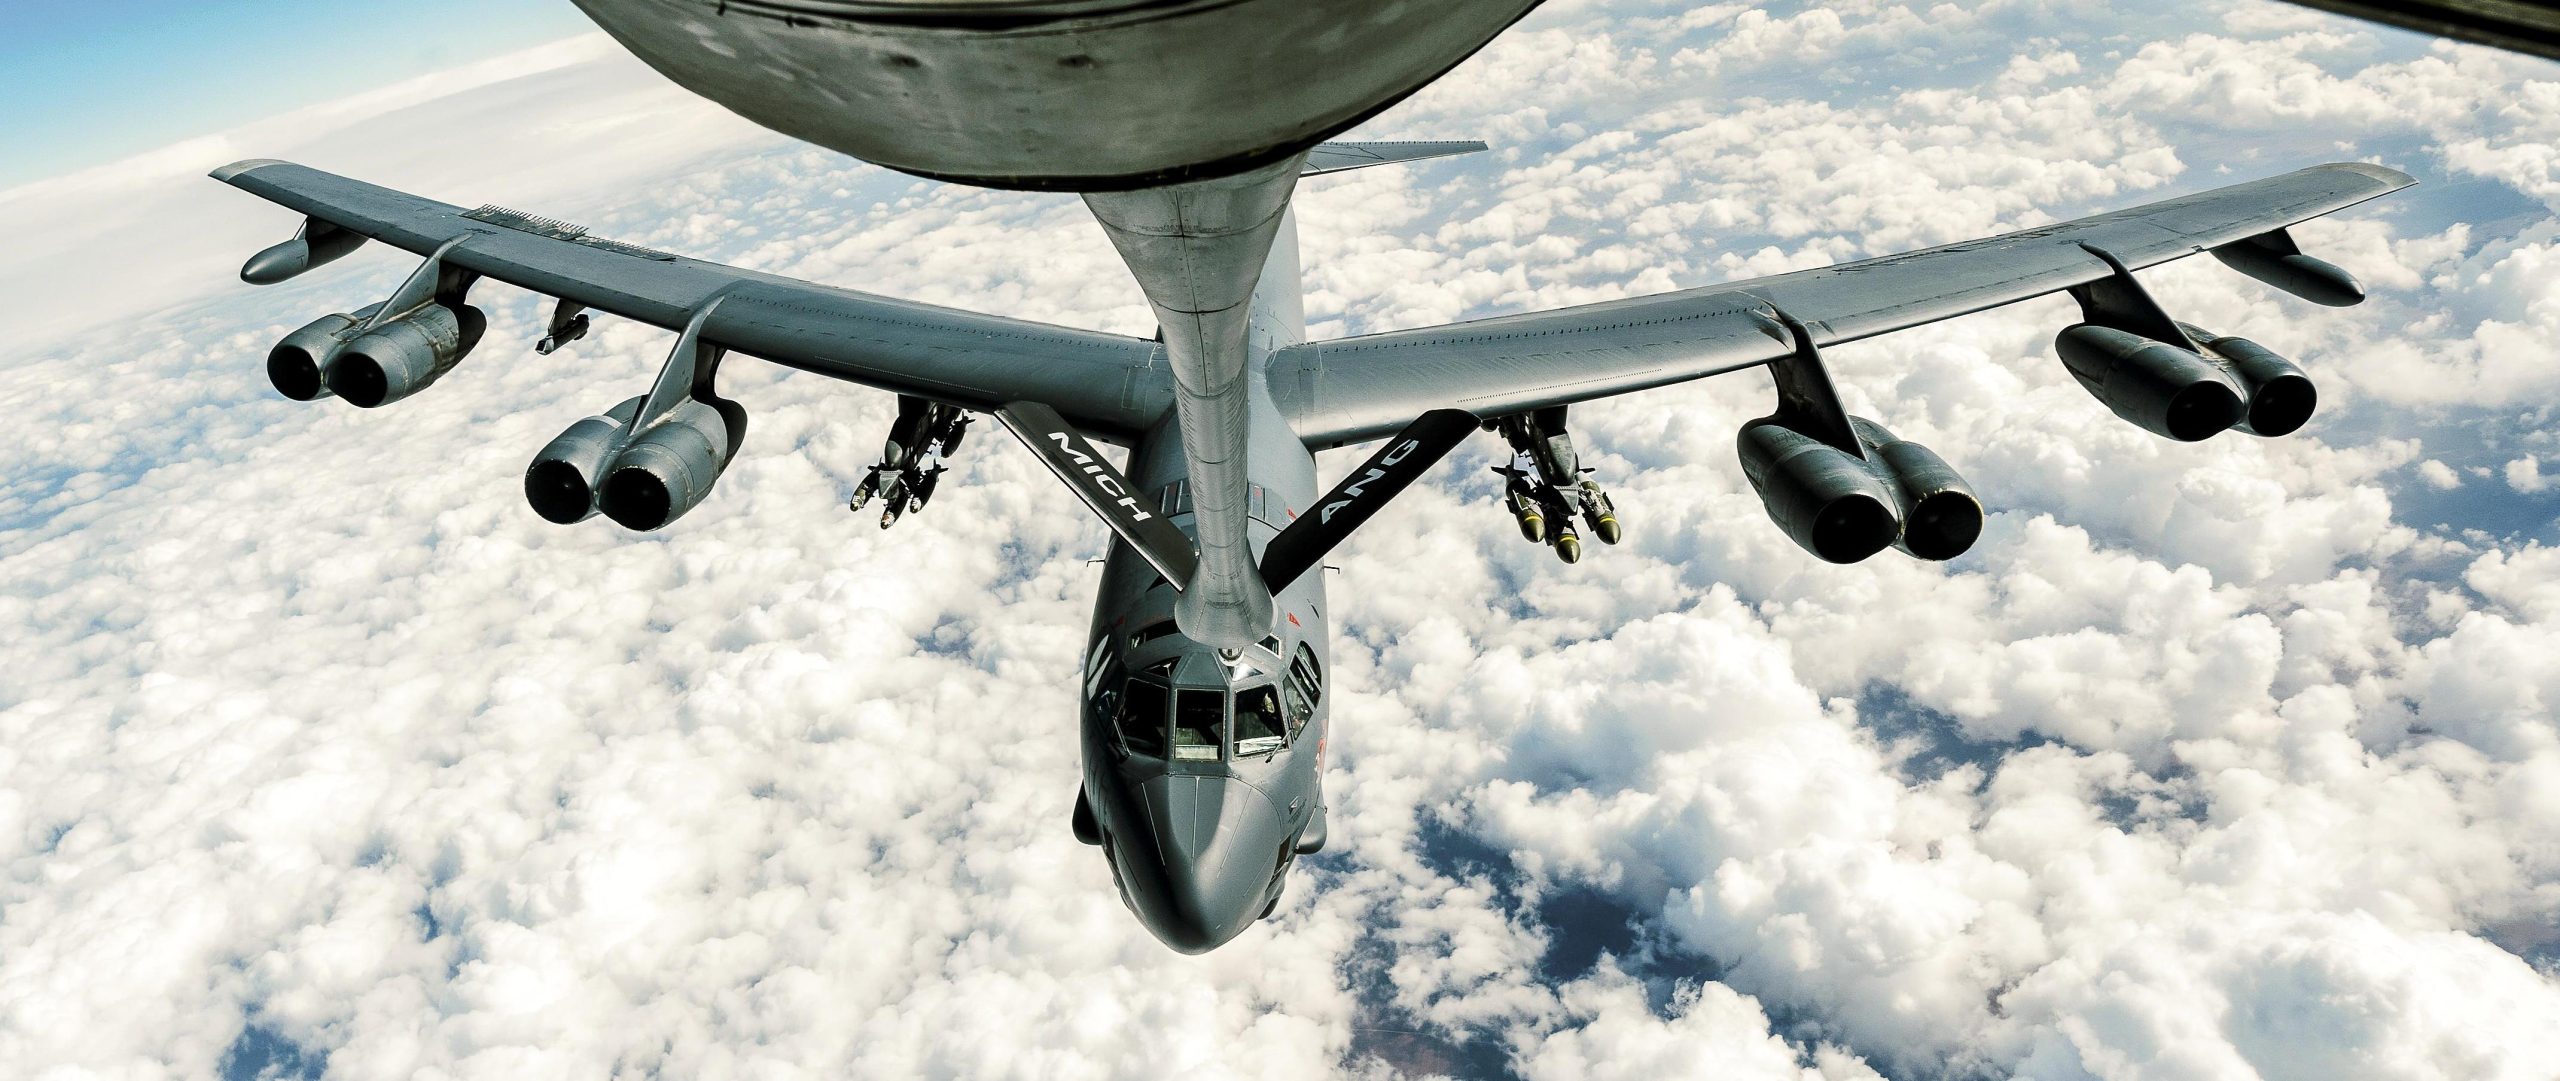 Βίντεο: Δείτε εντυπωσιακές λήψεις από τον εναέριο ανεφοδιασμό B-52H εν πτήσει προς την Ευρώπη